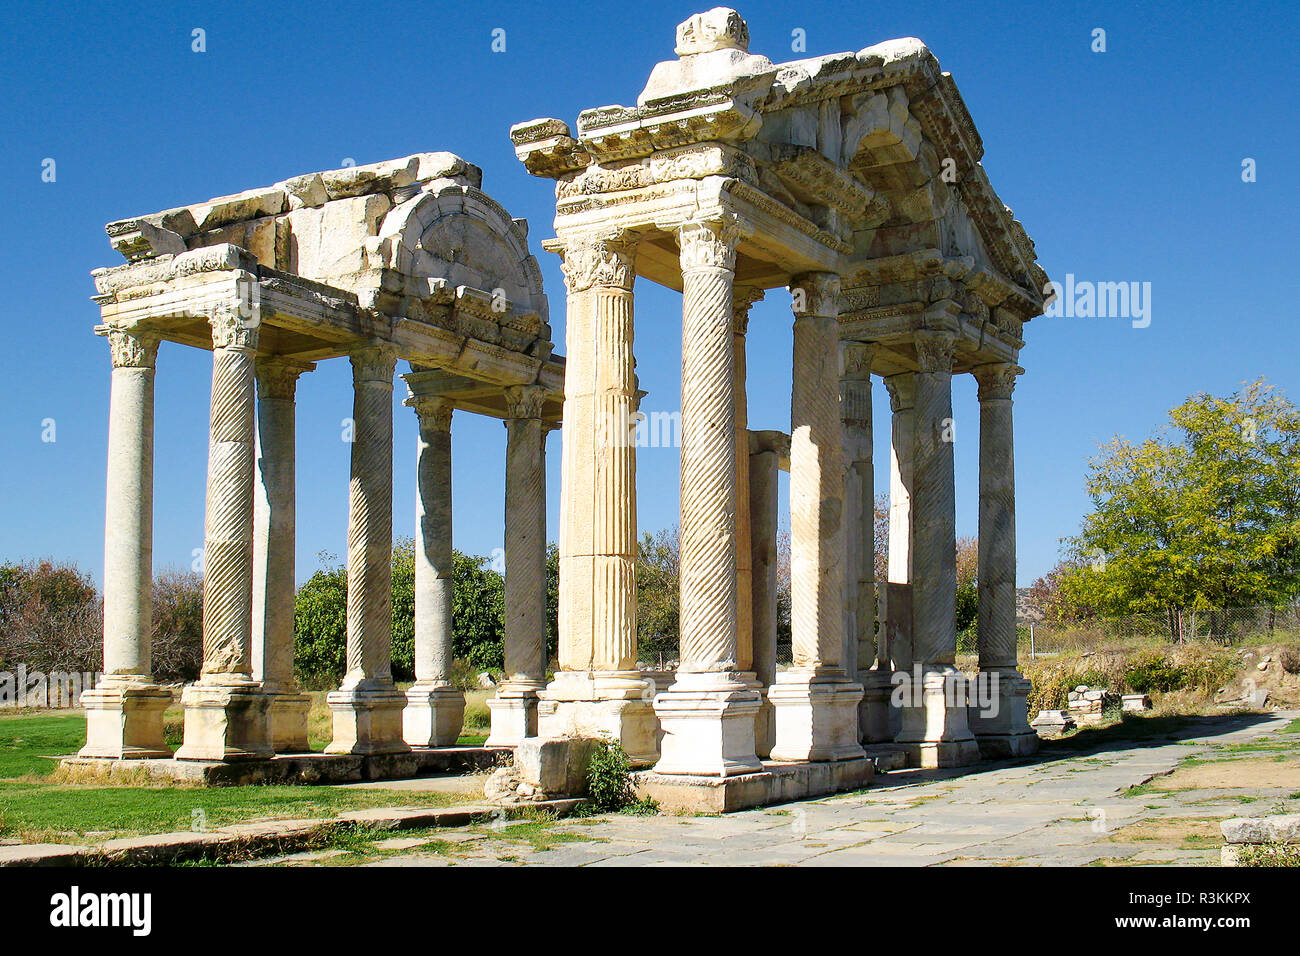 La porte monumentale, situé à l'est du temple d'Aphrodisias et sur la rue nord-sud est datée du 2e siècle avant JC. Banque D'Images